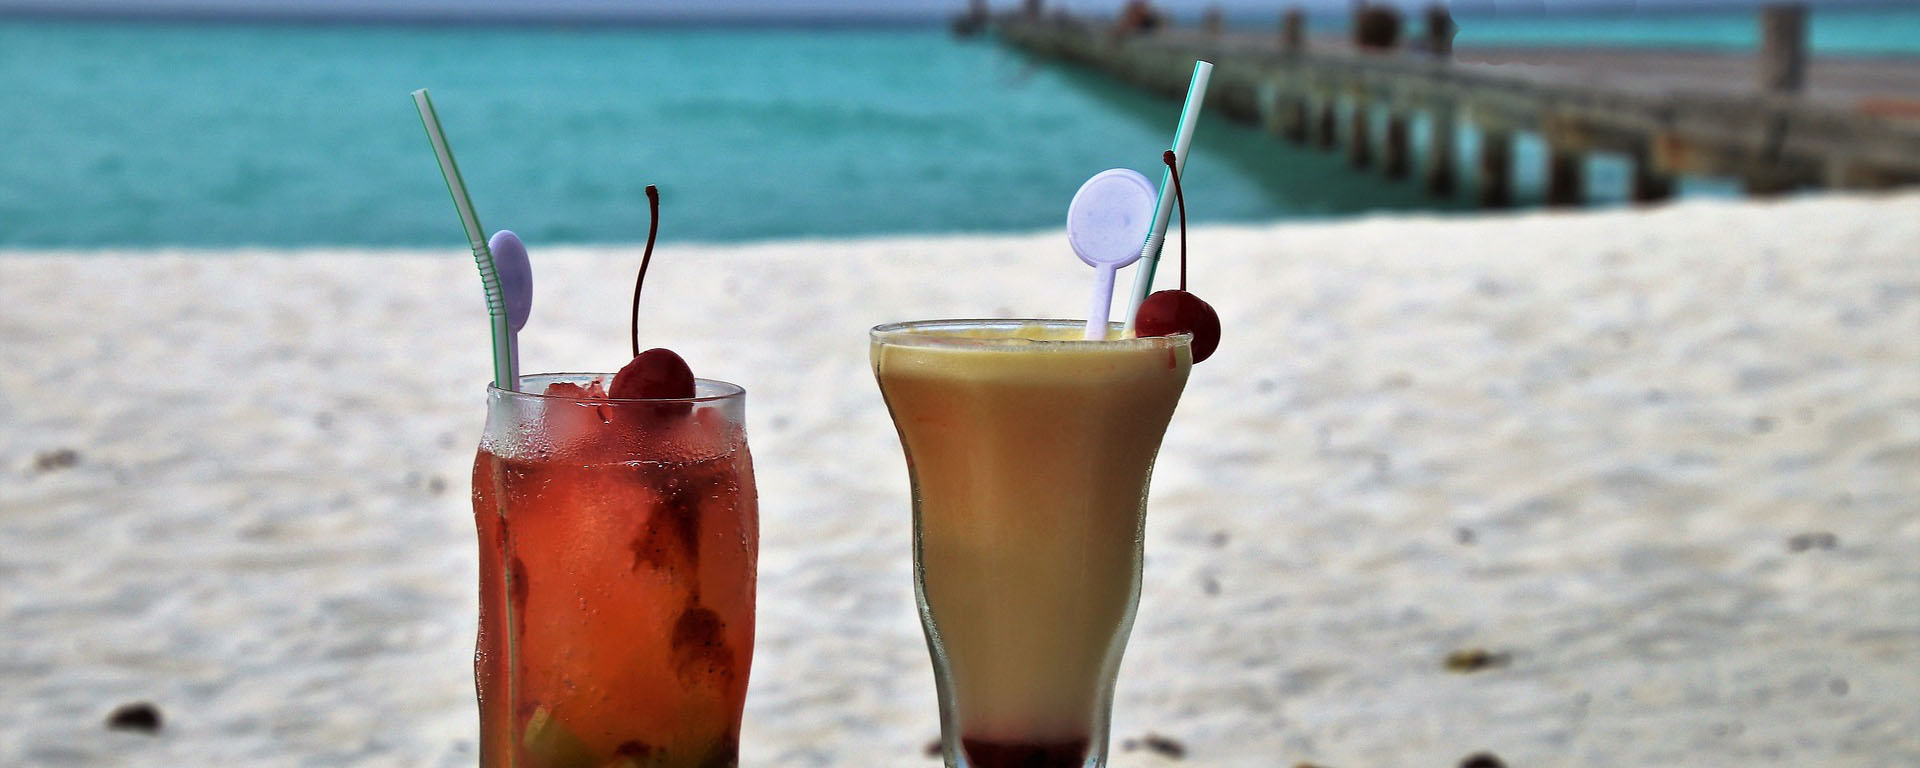 Как остаться на Мальдивах, или Необычная услуга от отеля